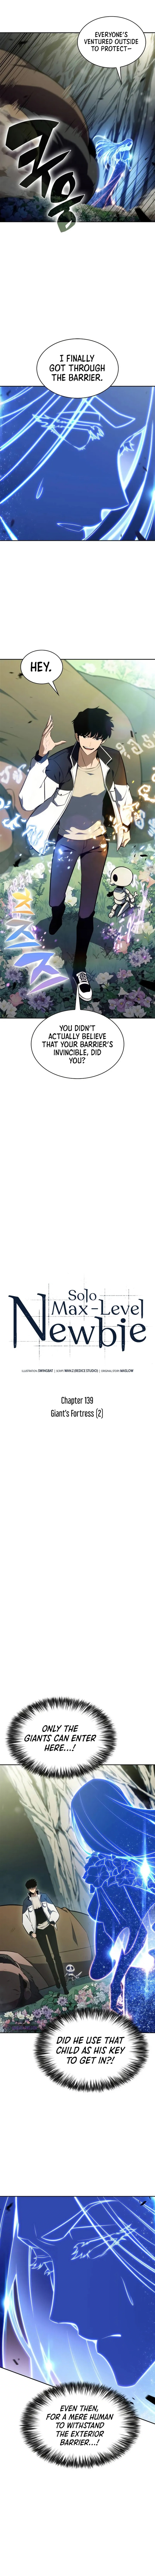 solo_max_level_newbie_139_5